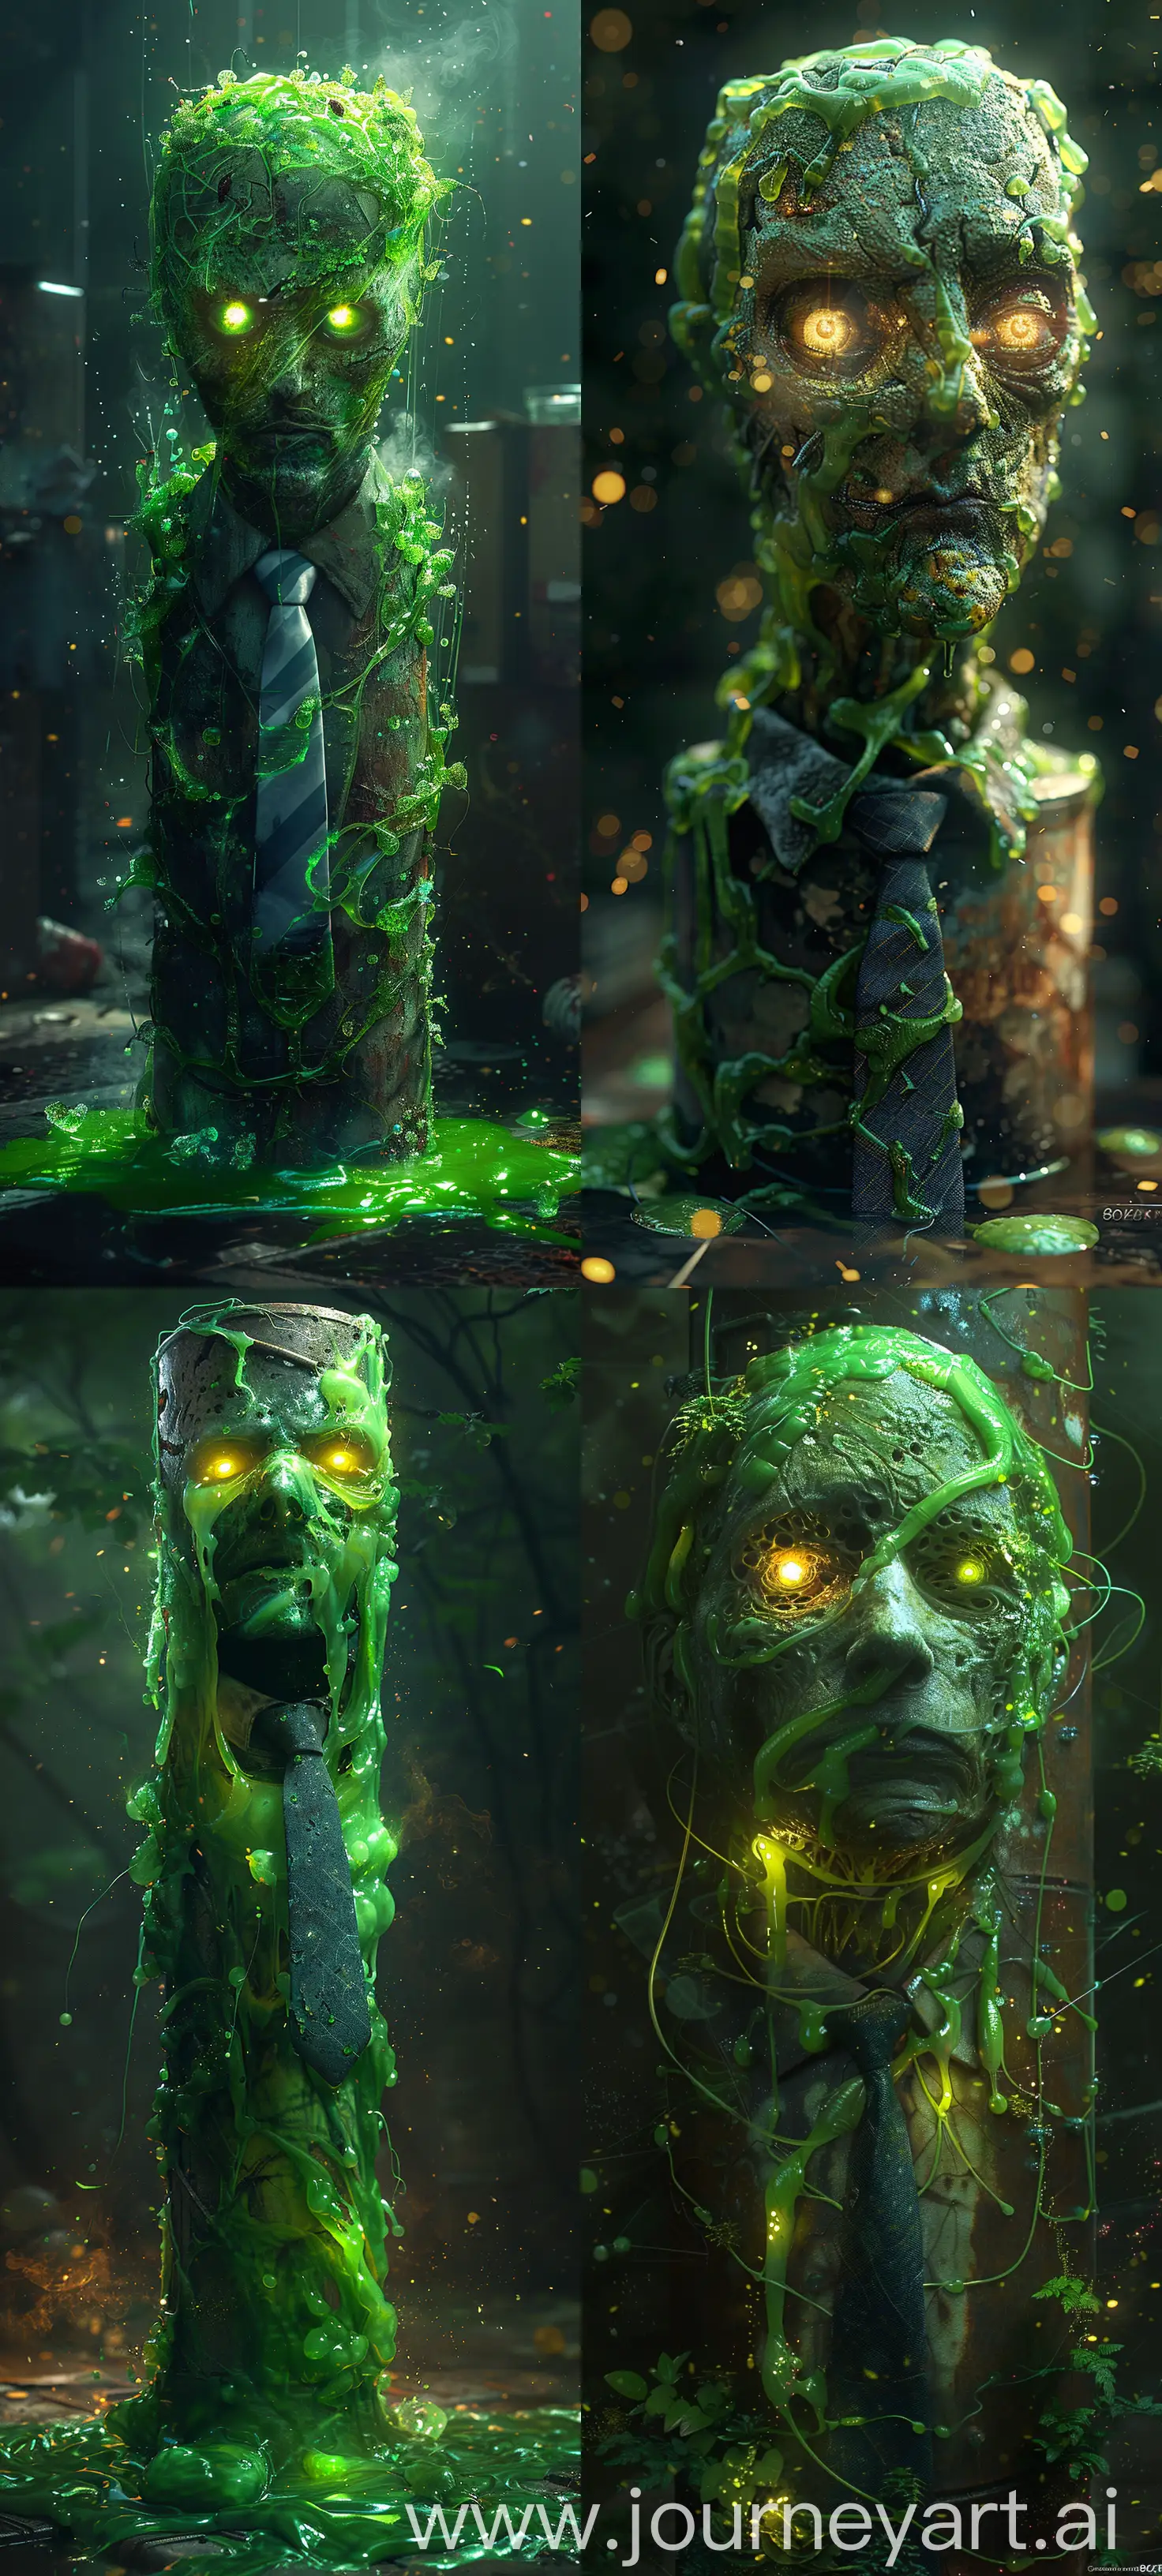 Eerie-Cyber-Bogeyman-in-Glowing-Slime-HyperRealistic-8K-Digital-Art